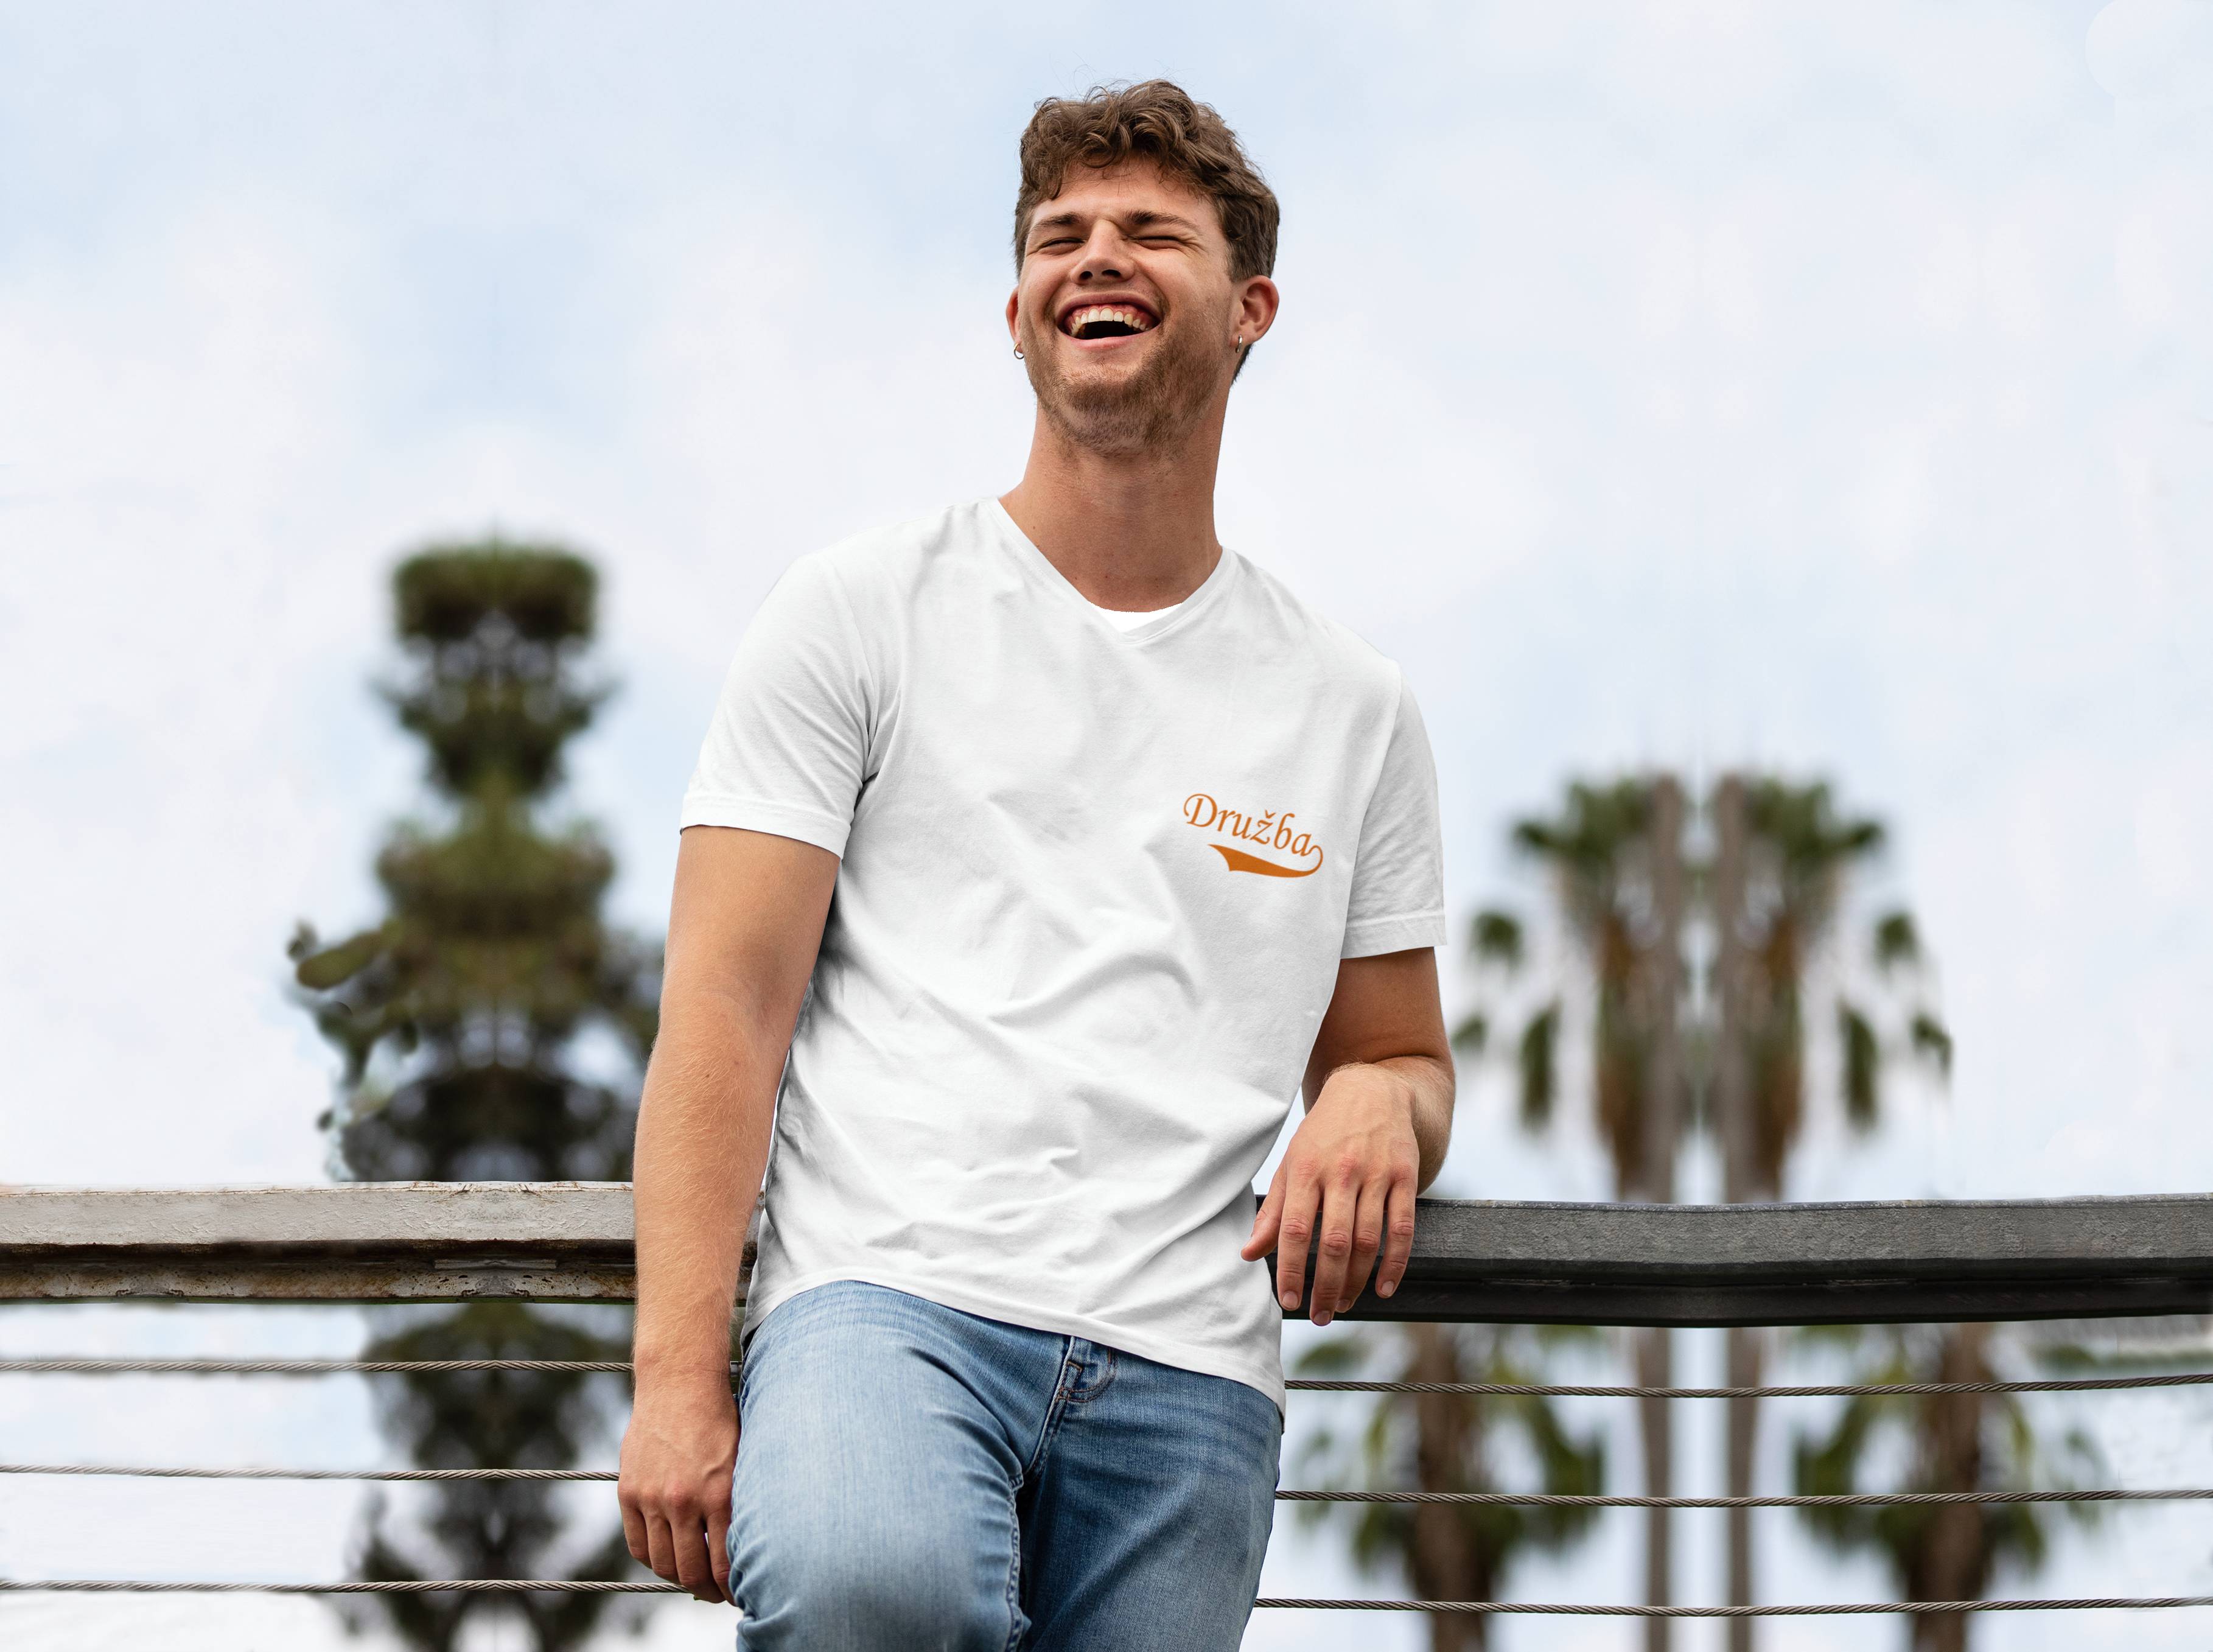 Personal Pánske tričko simple - Družba Farba: biela, Veľkosť - dospelý: XL